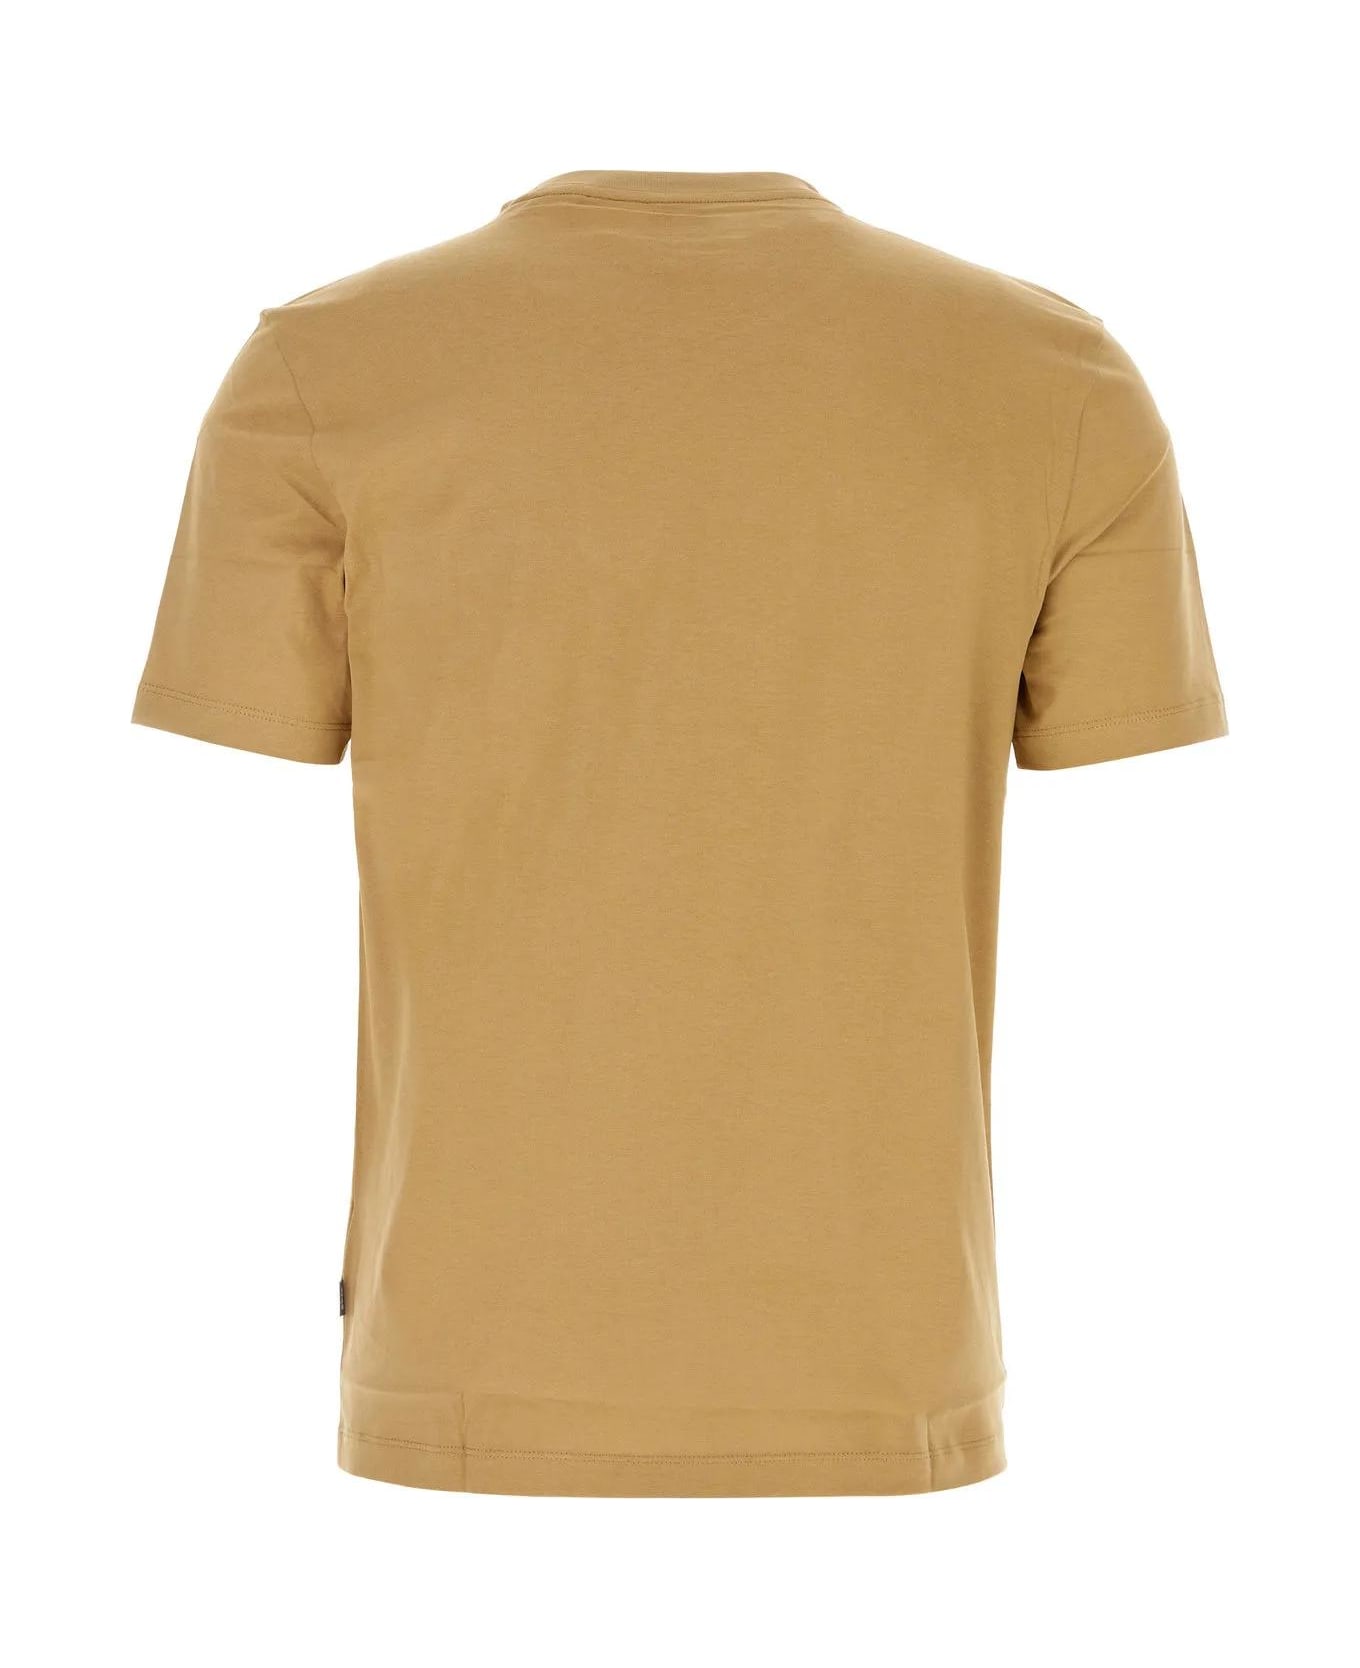 Hugo Boss Camel Cotton T-shirt - Beige